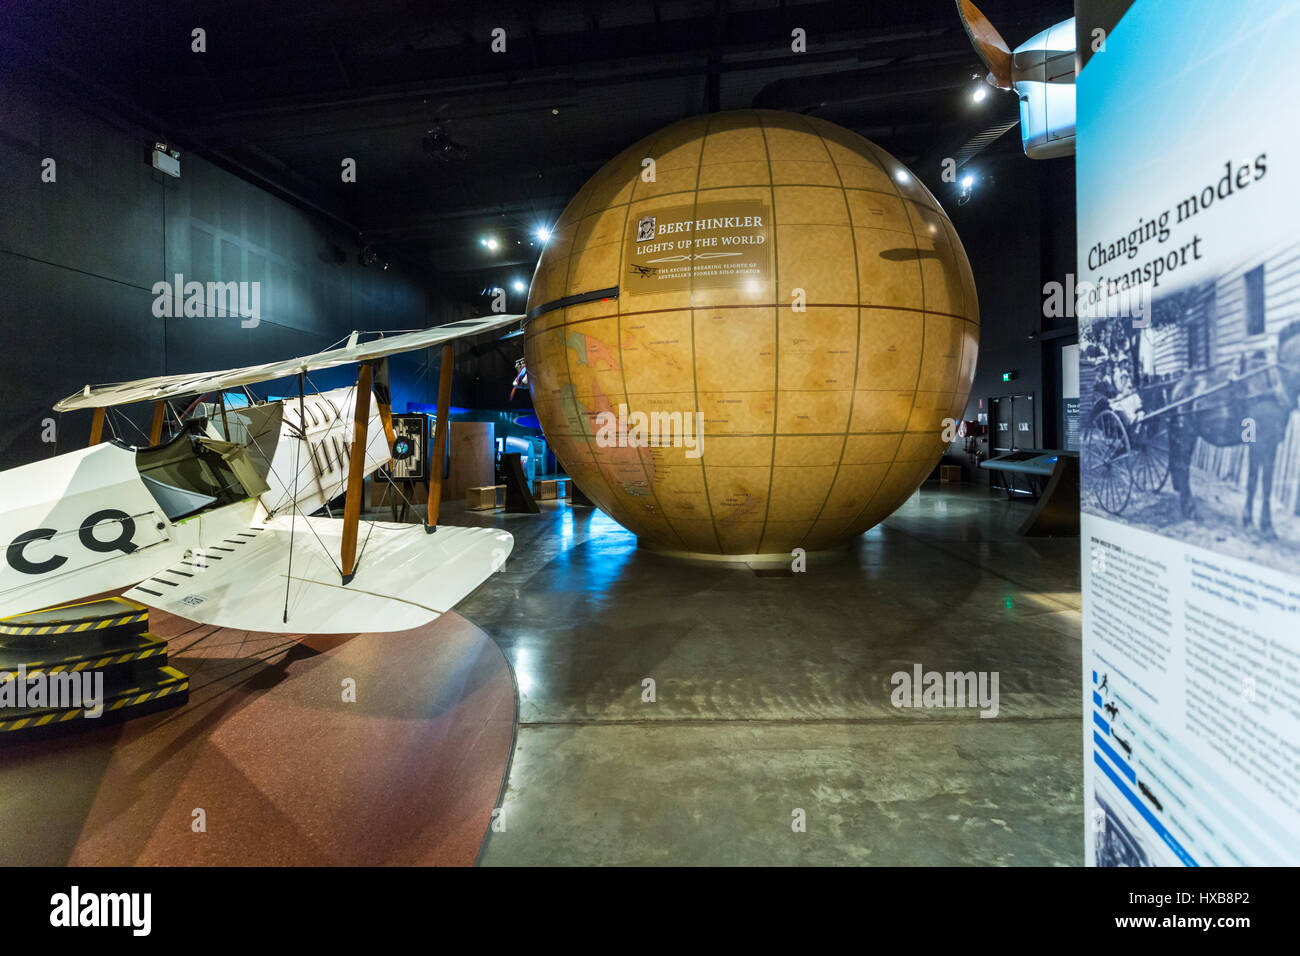 Replica avions et des expositions interactives à l'intérieur du hall de l'Aviation Hinkler. Bundaberg, Queensland, Australie Banque D'Images